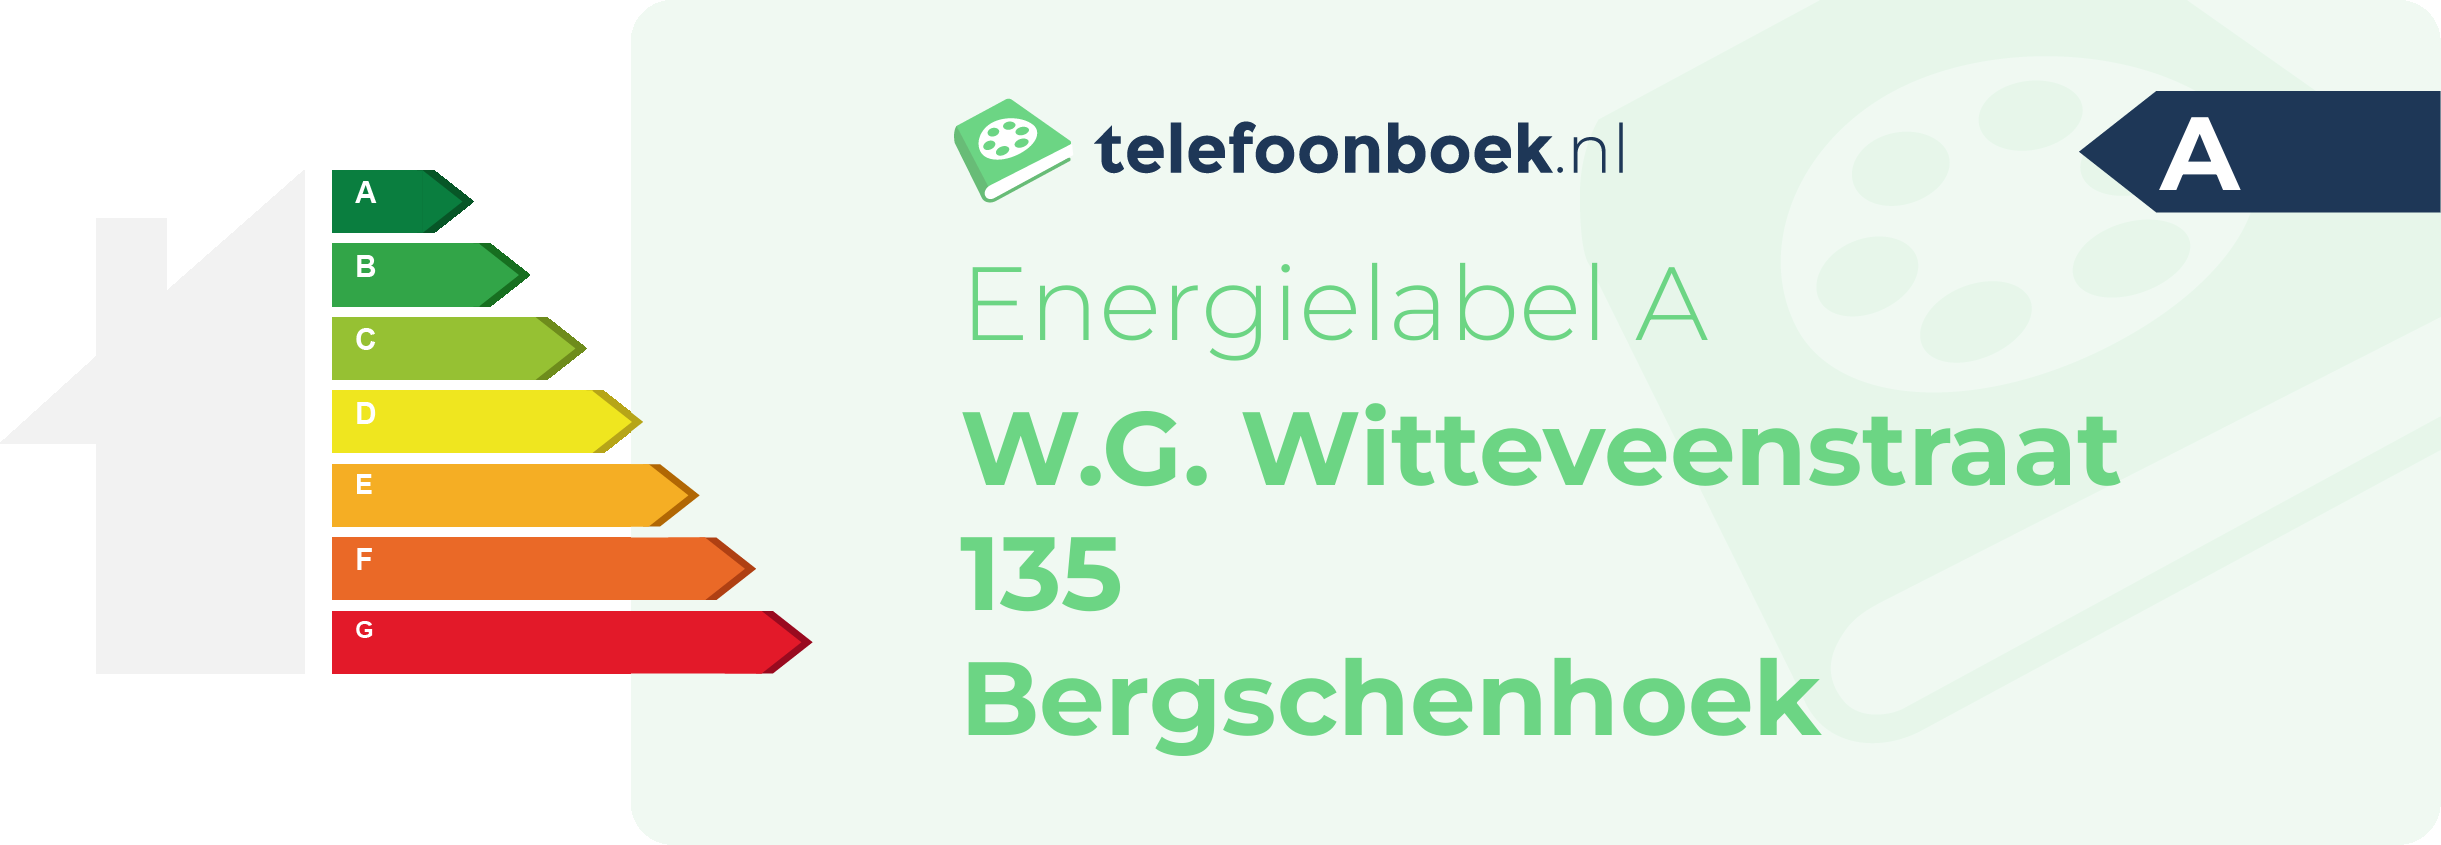 Energielabel W.G. Witteveenstraat 135 Bergschenhoek